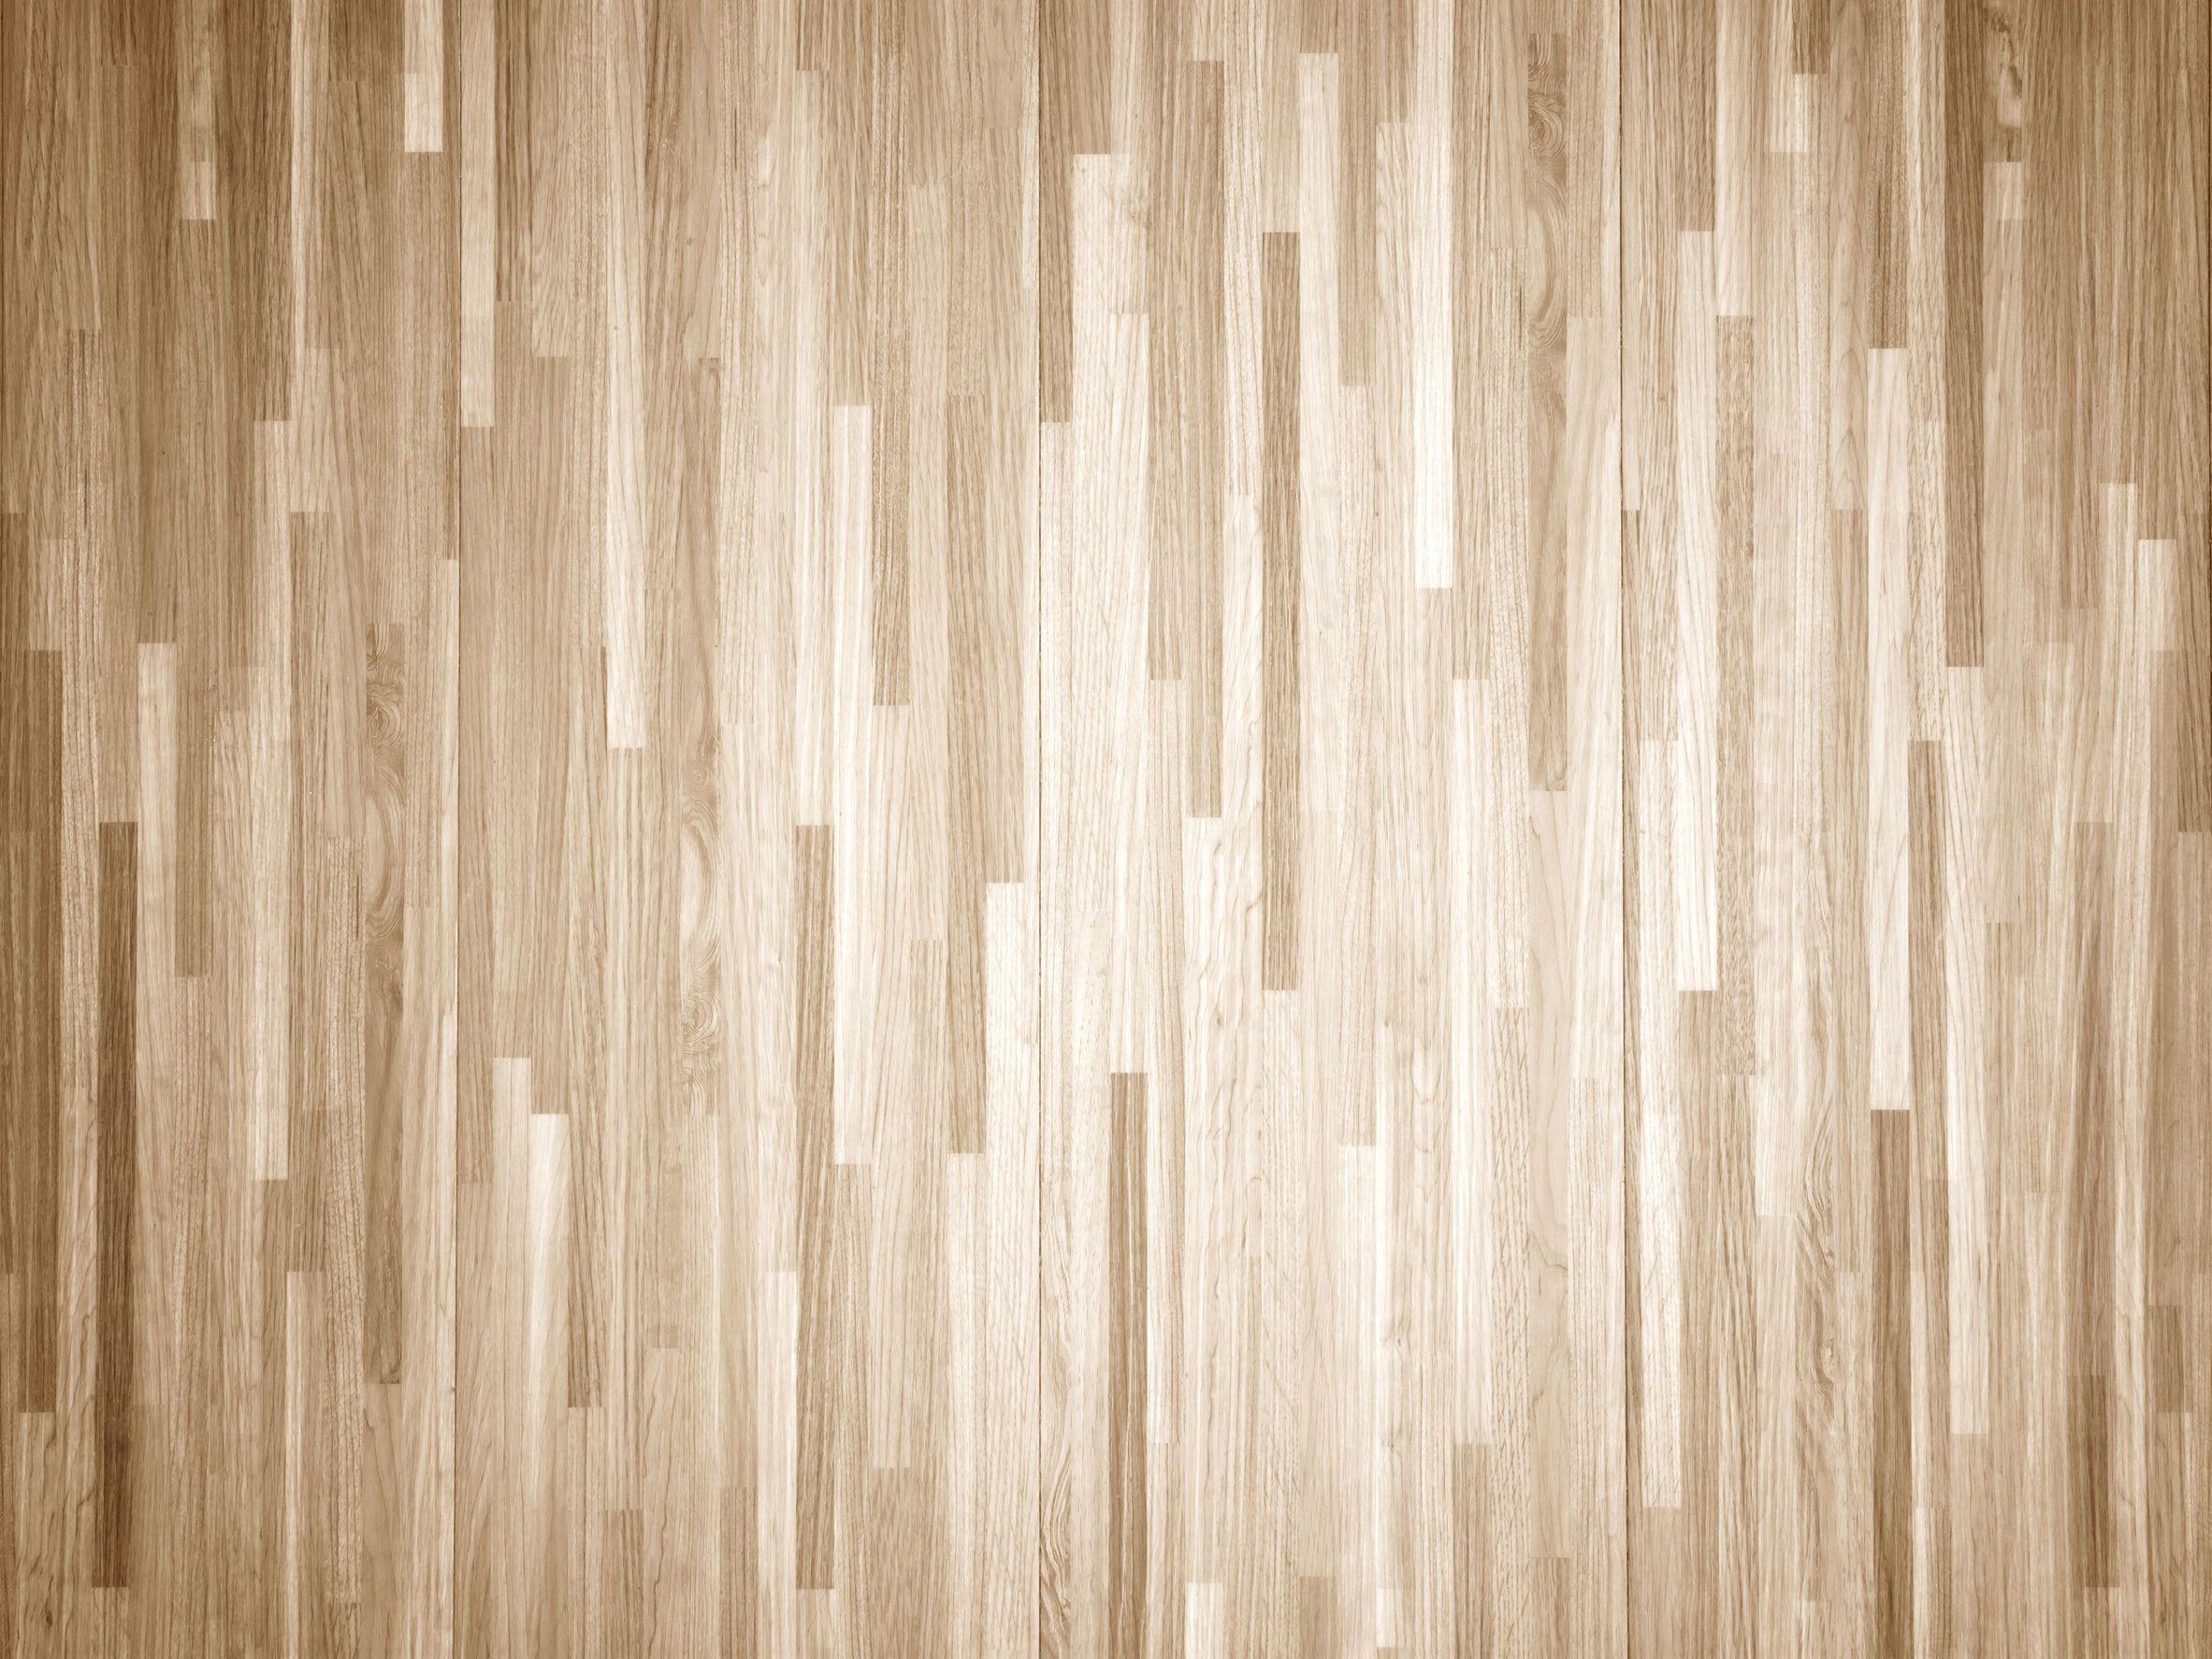 20 Wonderful Sanding Painted Hardwood Floors 2024 free download sanding painted hardwood floors of how to chemically strip wood floors woodfloordoctor com for you